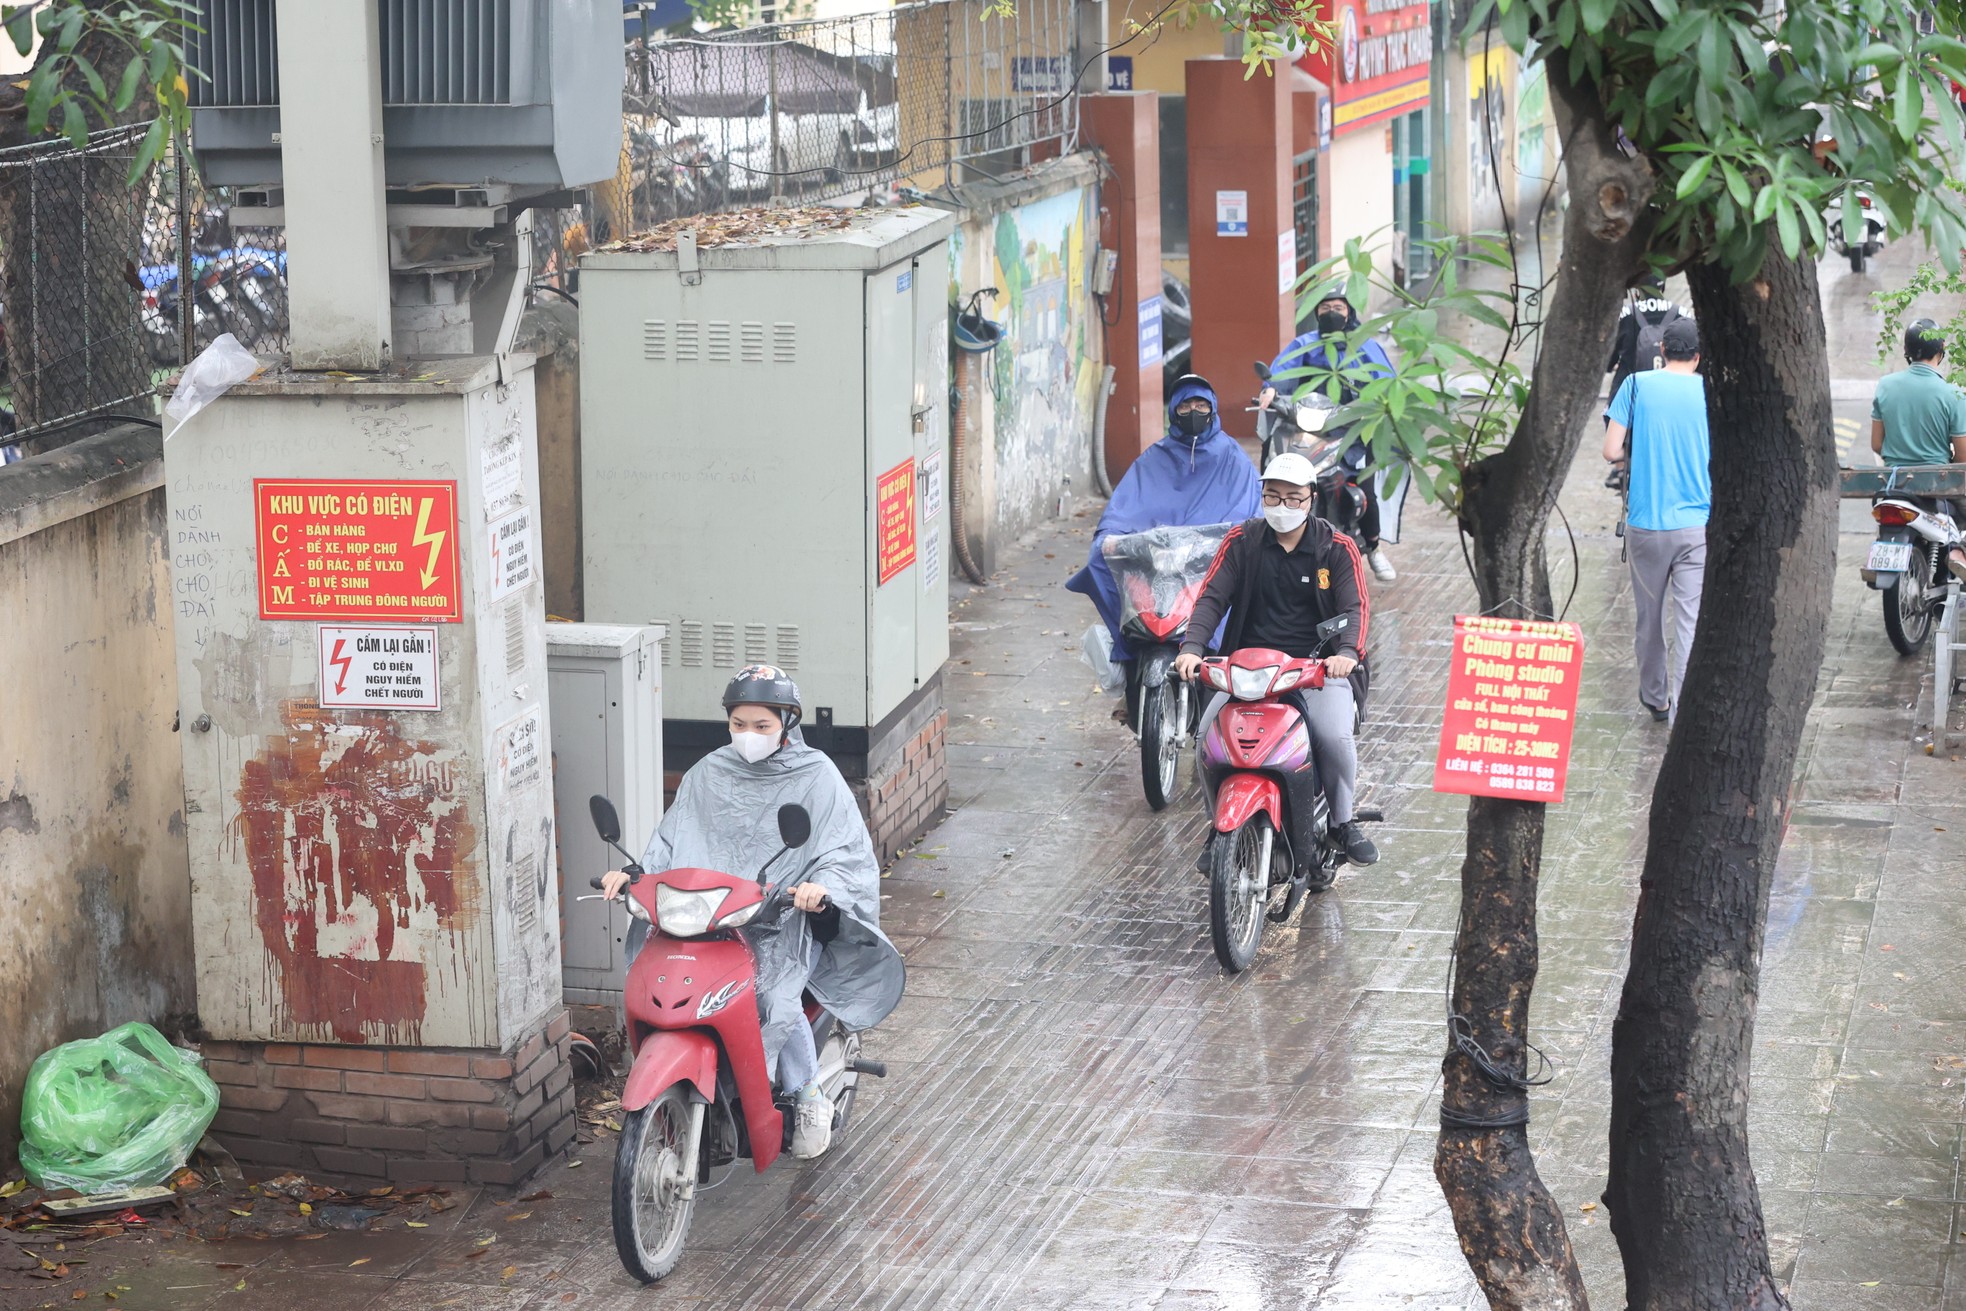 Nồm ẩm, trời mù kèm mưa khiến giao thông Hà Nội rối loạn - Ảnh 9.